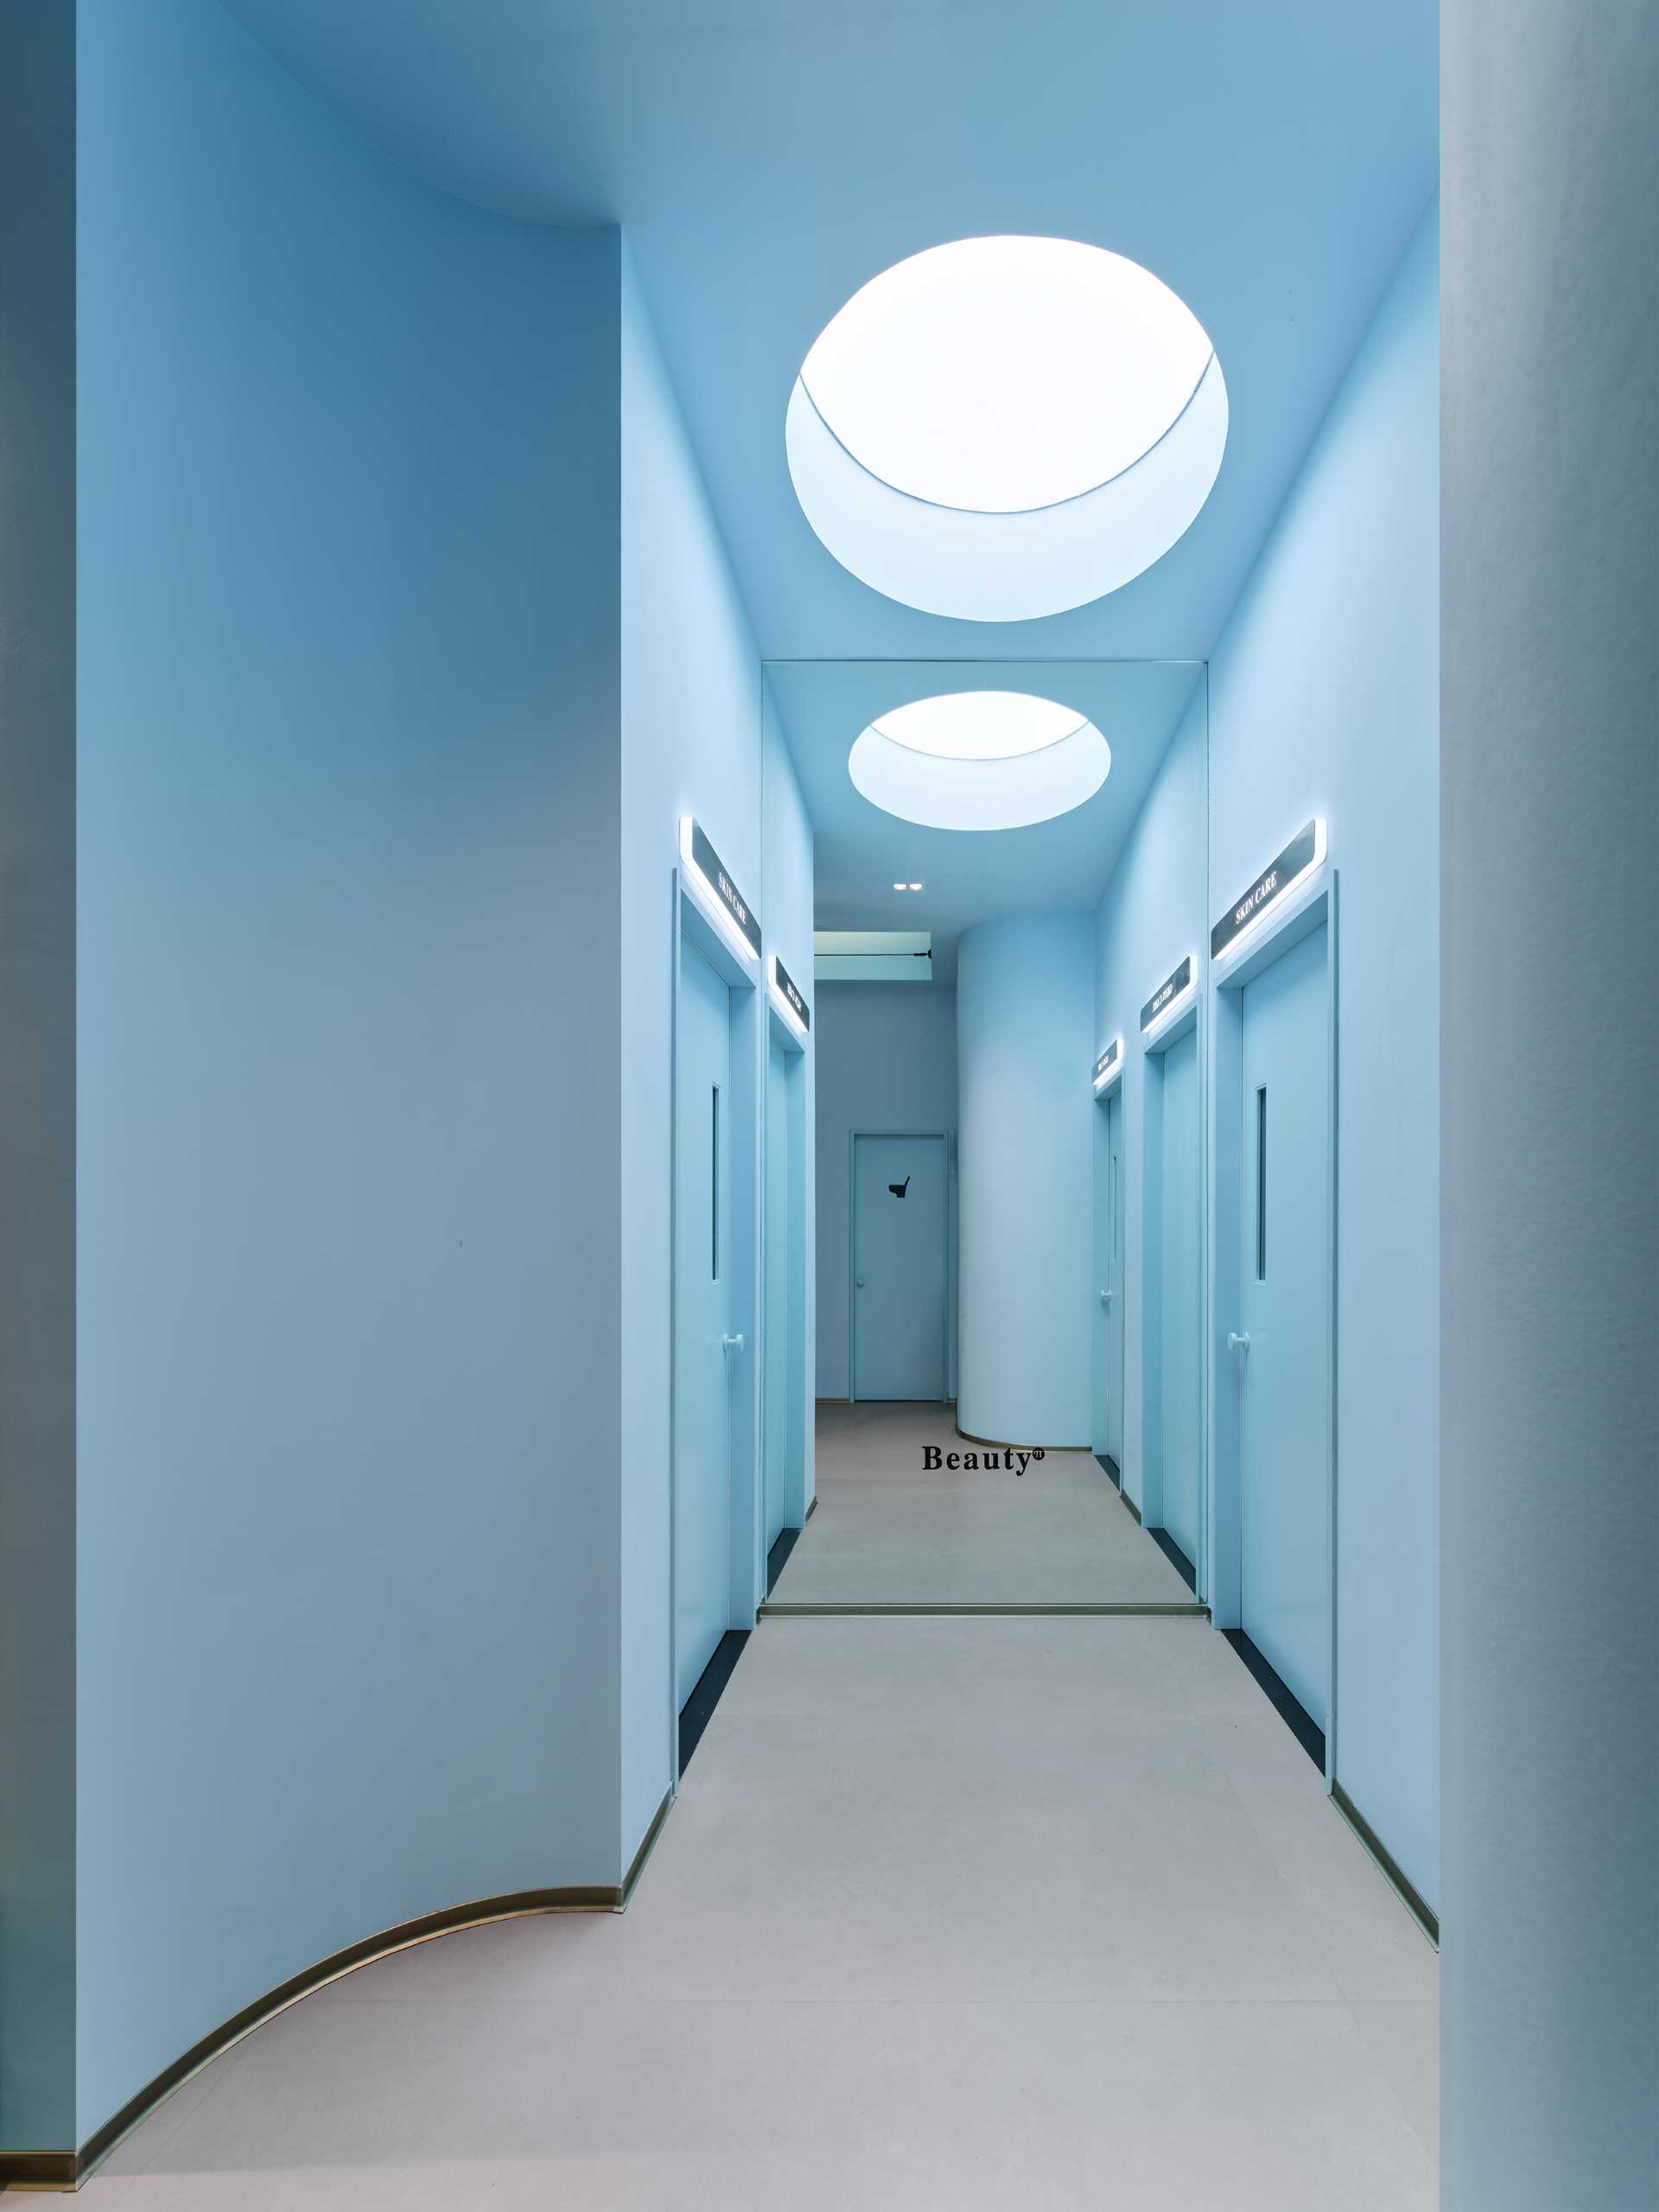 یک راهرو آبی روشن به اتاق های مختلف درمان این مرکز مدرن مراقبت از پوست منتهی می شود.